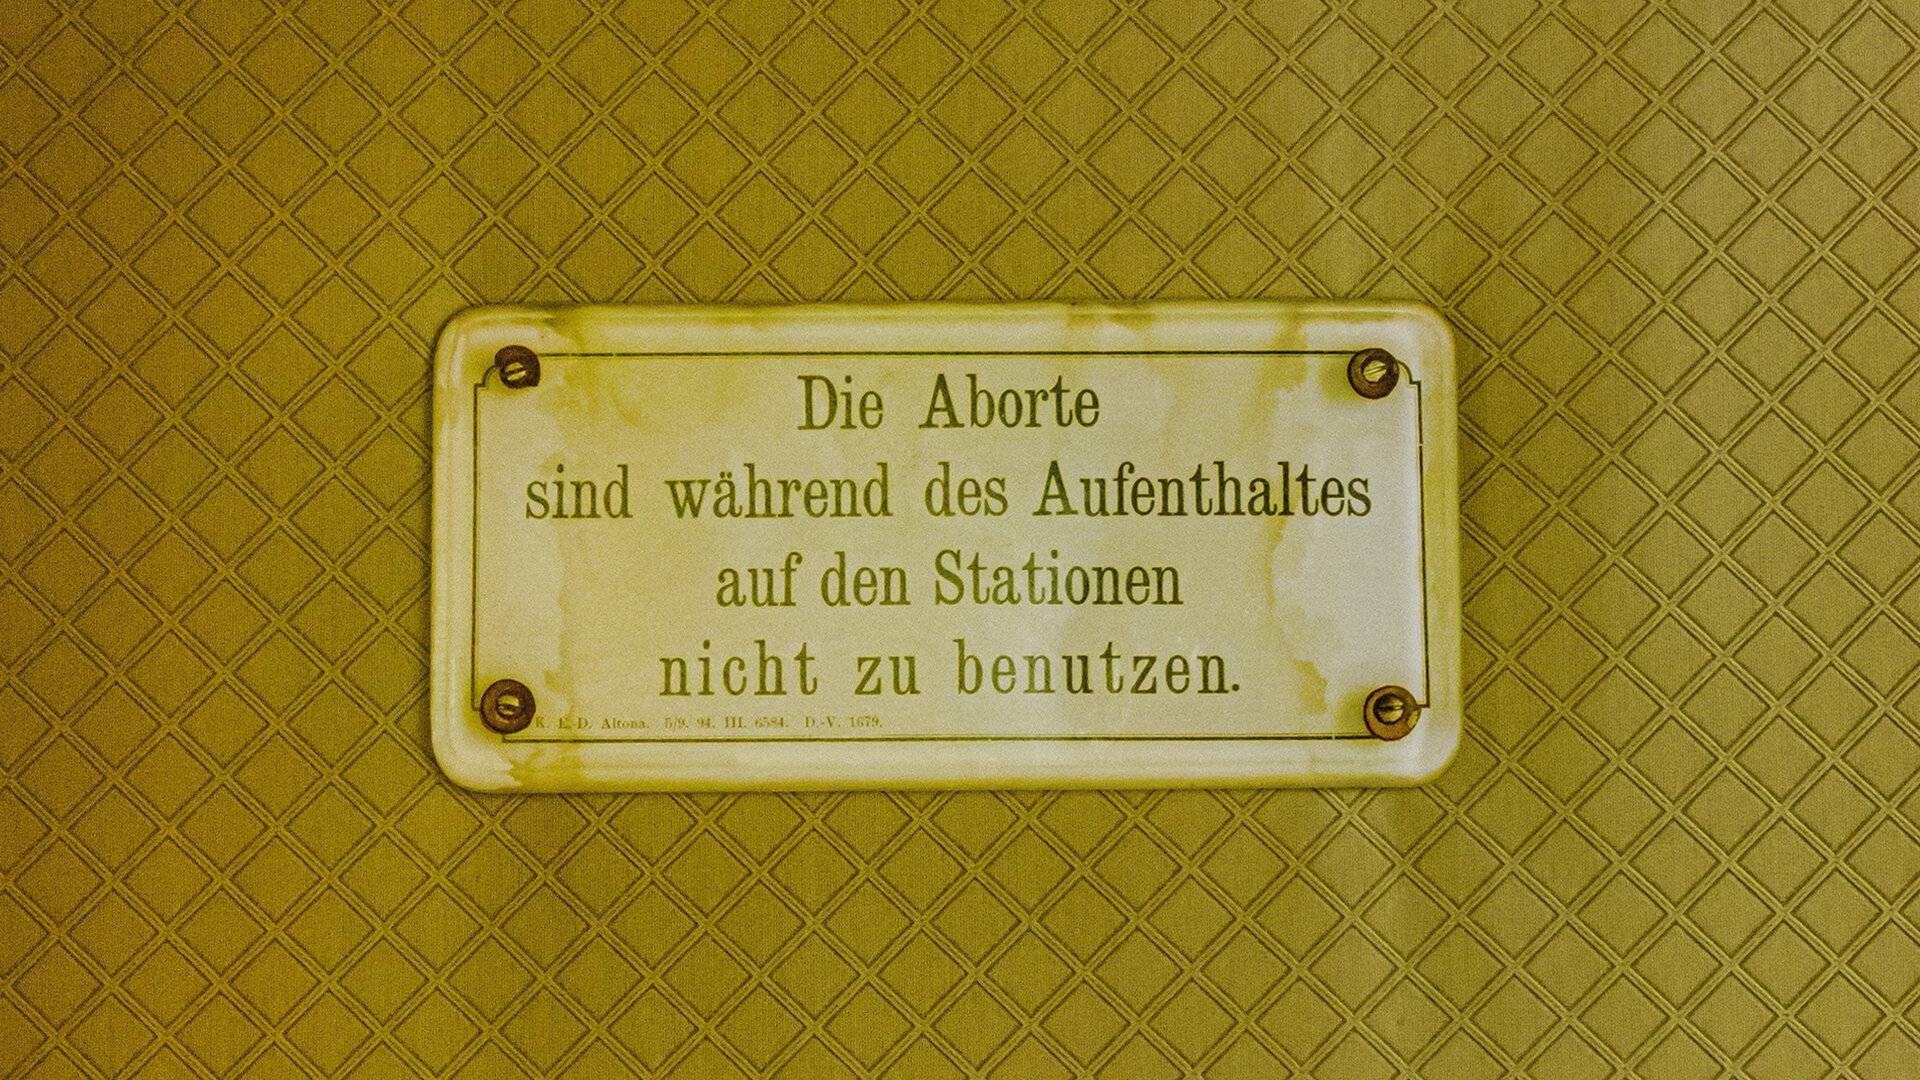 Benutzungsverbotsschild für Aborte um 1880.